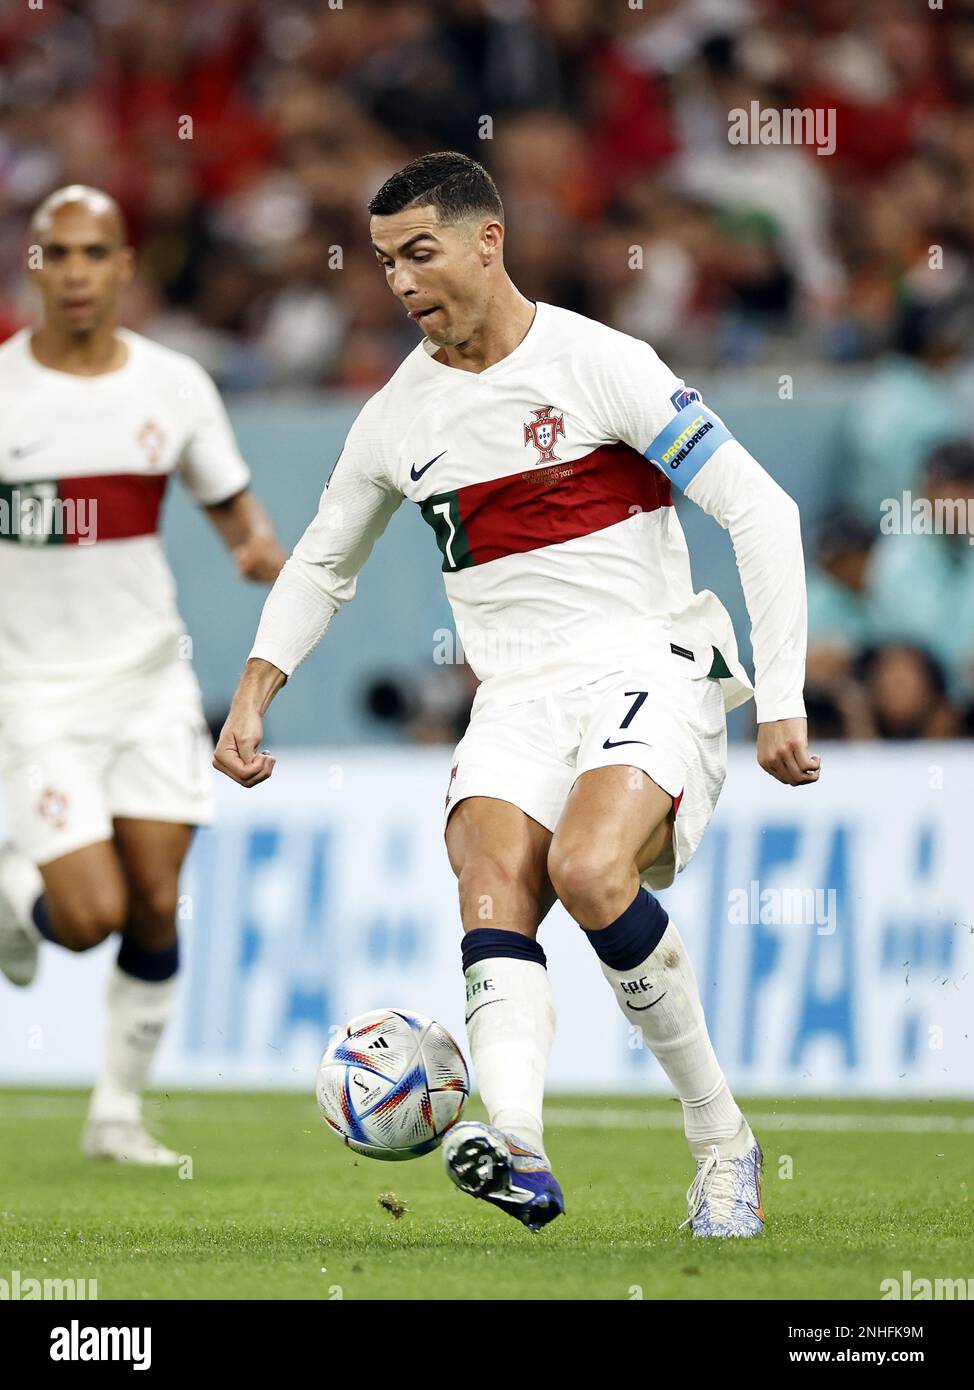 DOHA - Cristiano Ronaldo du Portugal pendant la coupe du monde de la FIFA Qatar 2022 Groupe H match entre la Corée du Sud et le Portugal au stade de la ville d'éducation sur 2 décembre 2022 à Doha, Qatar. AP | hauteur néerlandaise | MAURICE DE PIERRE Banque D'Images